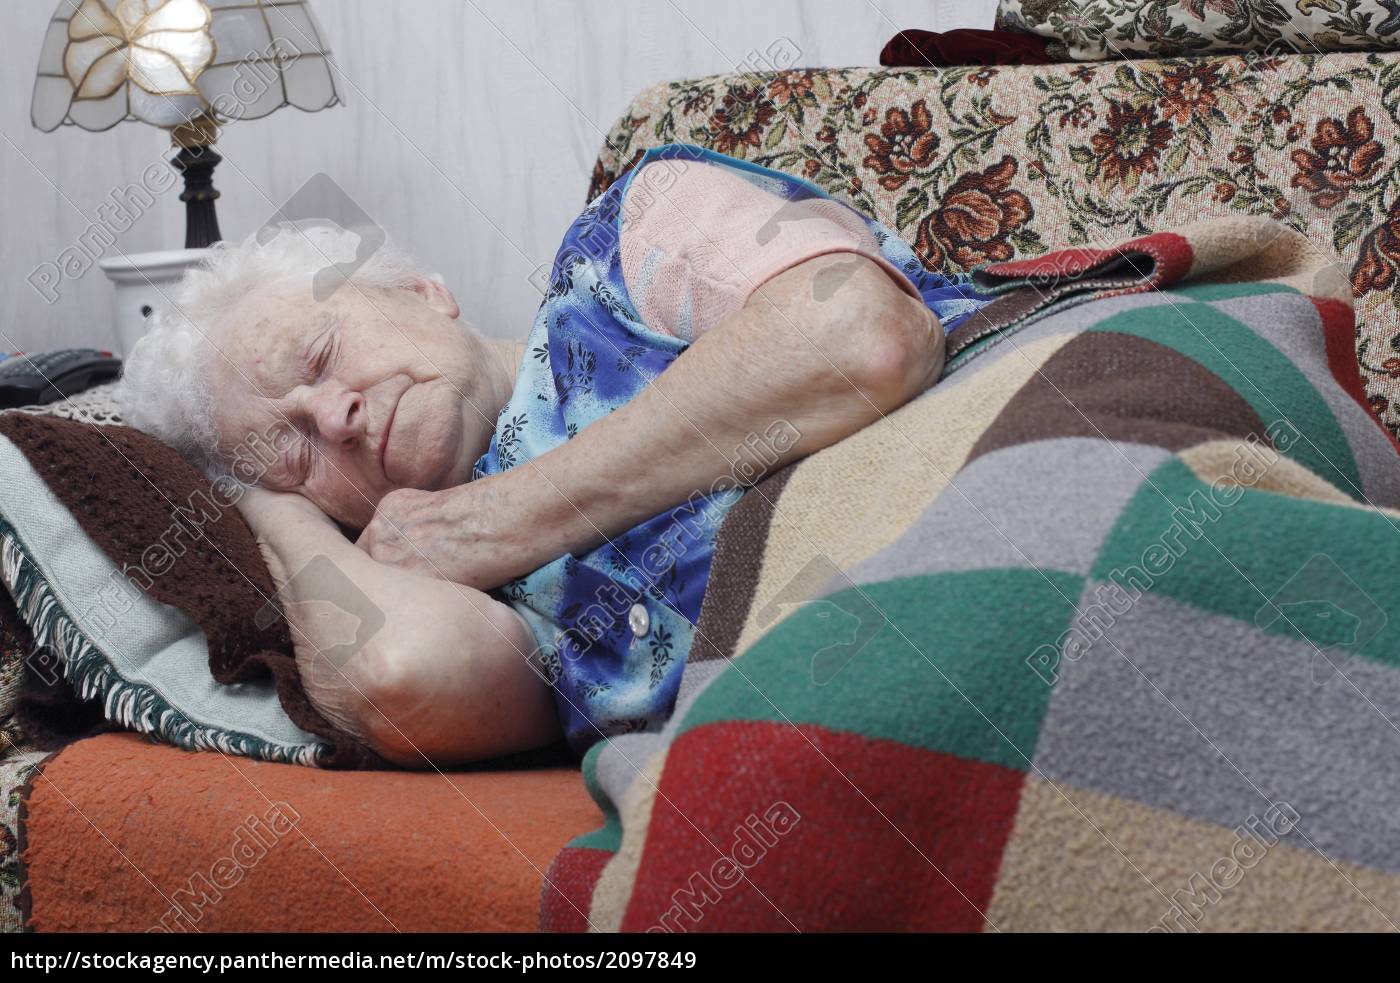 Бабуля 60 лет пихает игрушку в волосатую пиздень